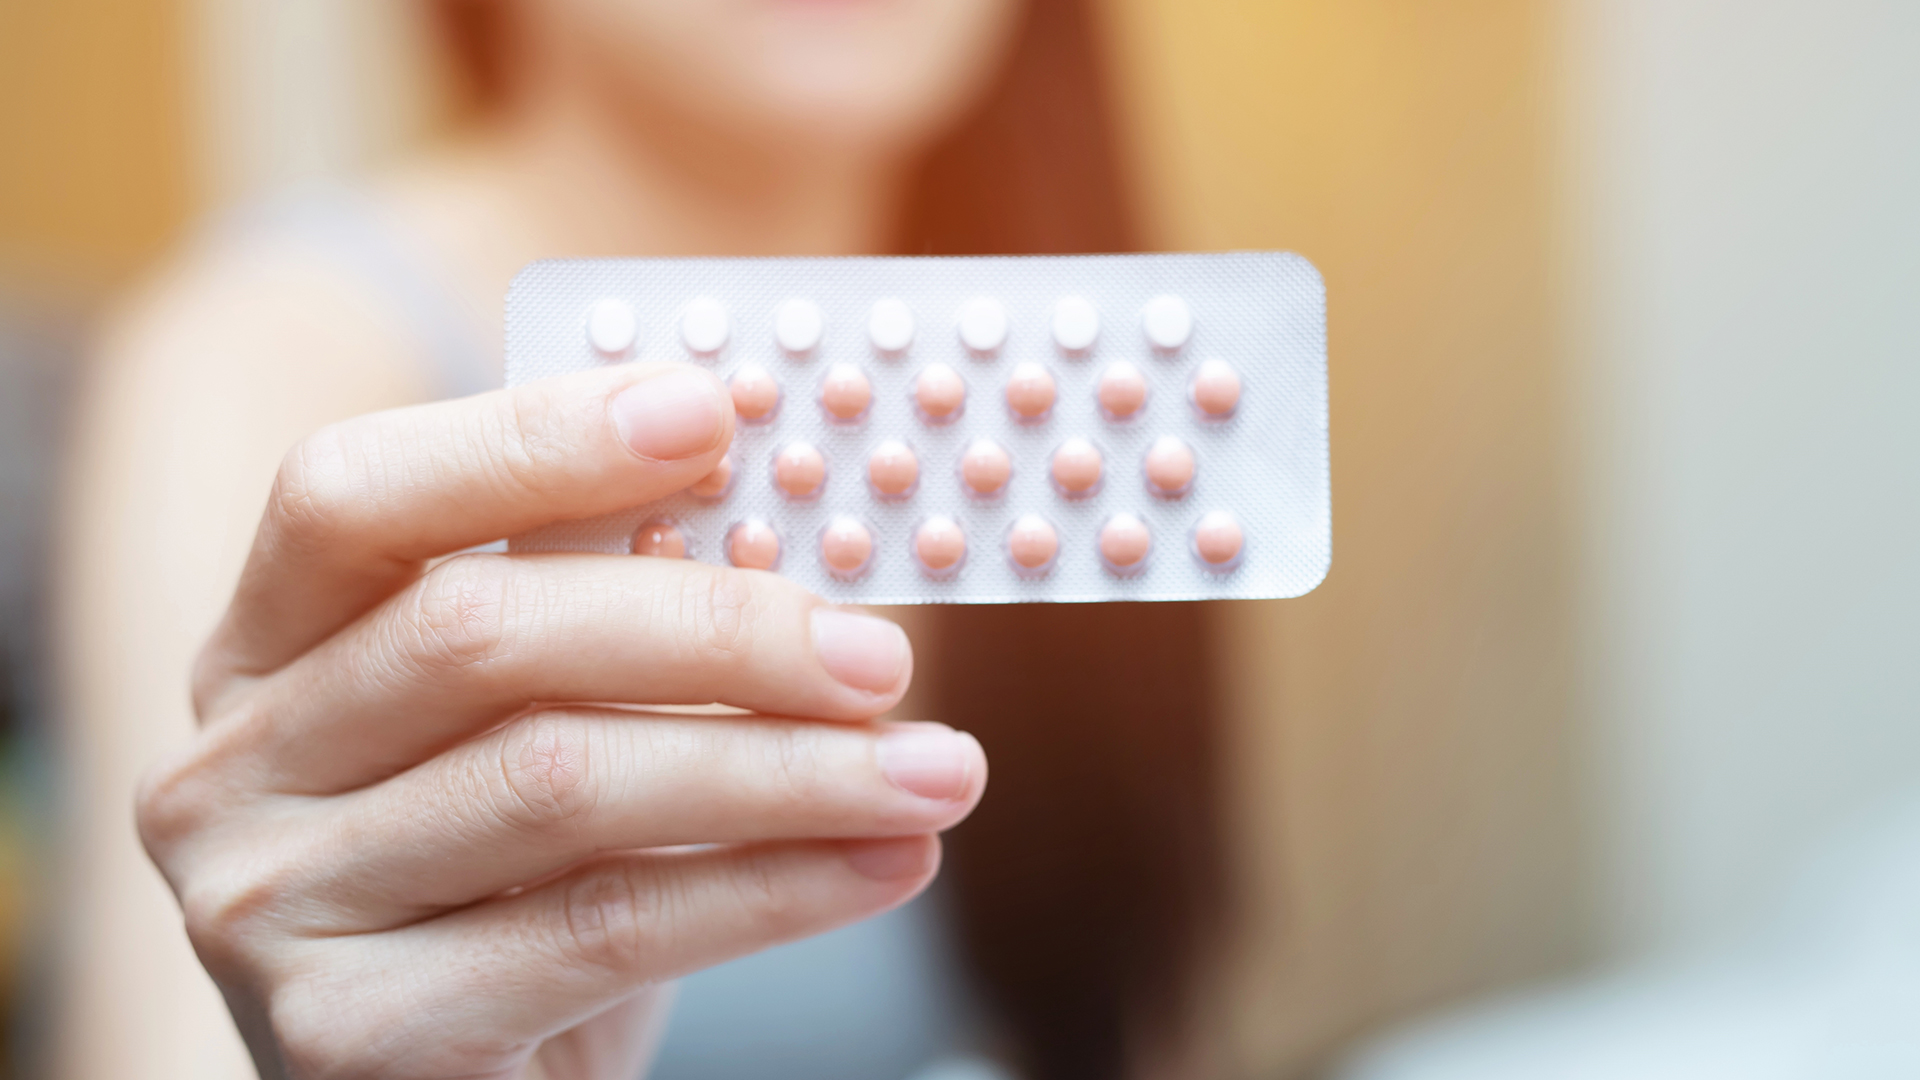 El asesoramiento anticonceptivo (salvo la colocación de un DIU o un implante) pueden ser hechas a través de consultas no presenciales, como por video o teléfono (Shutterstock)